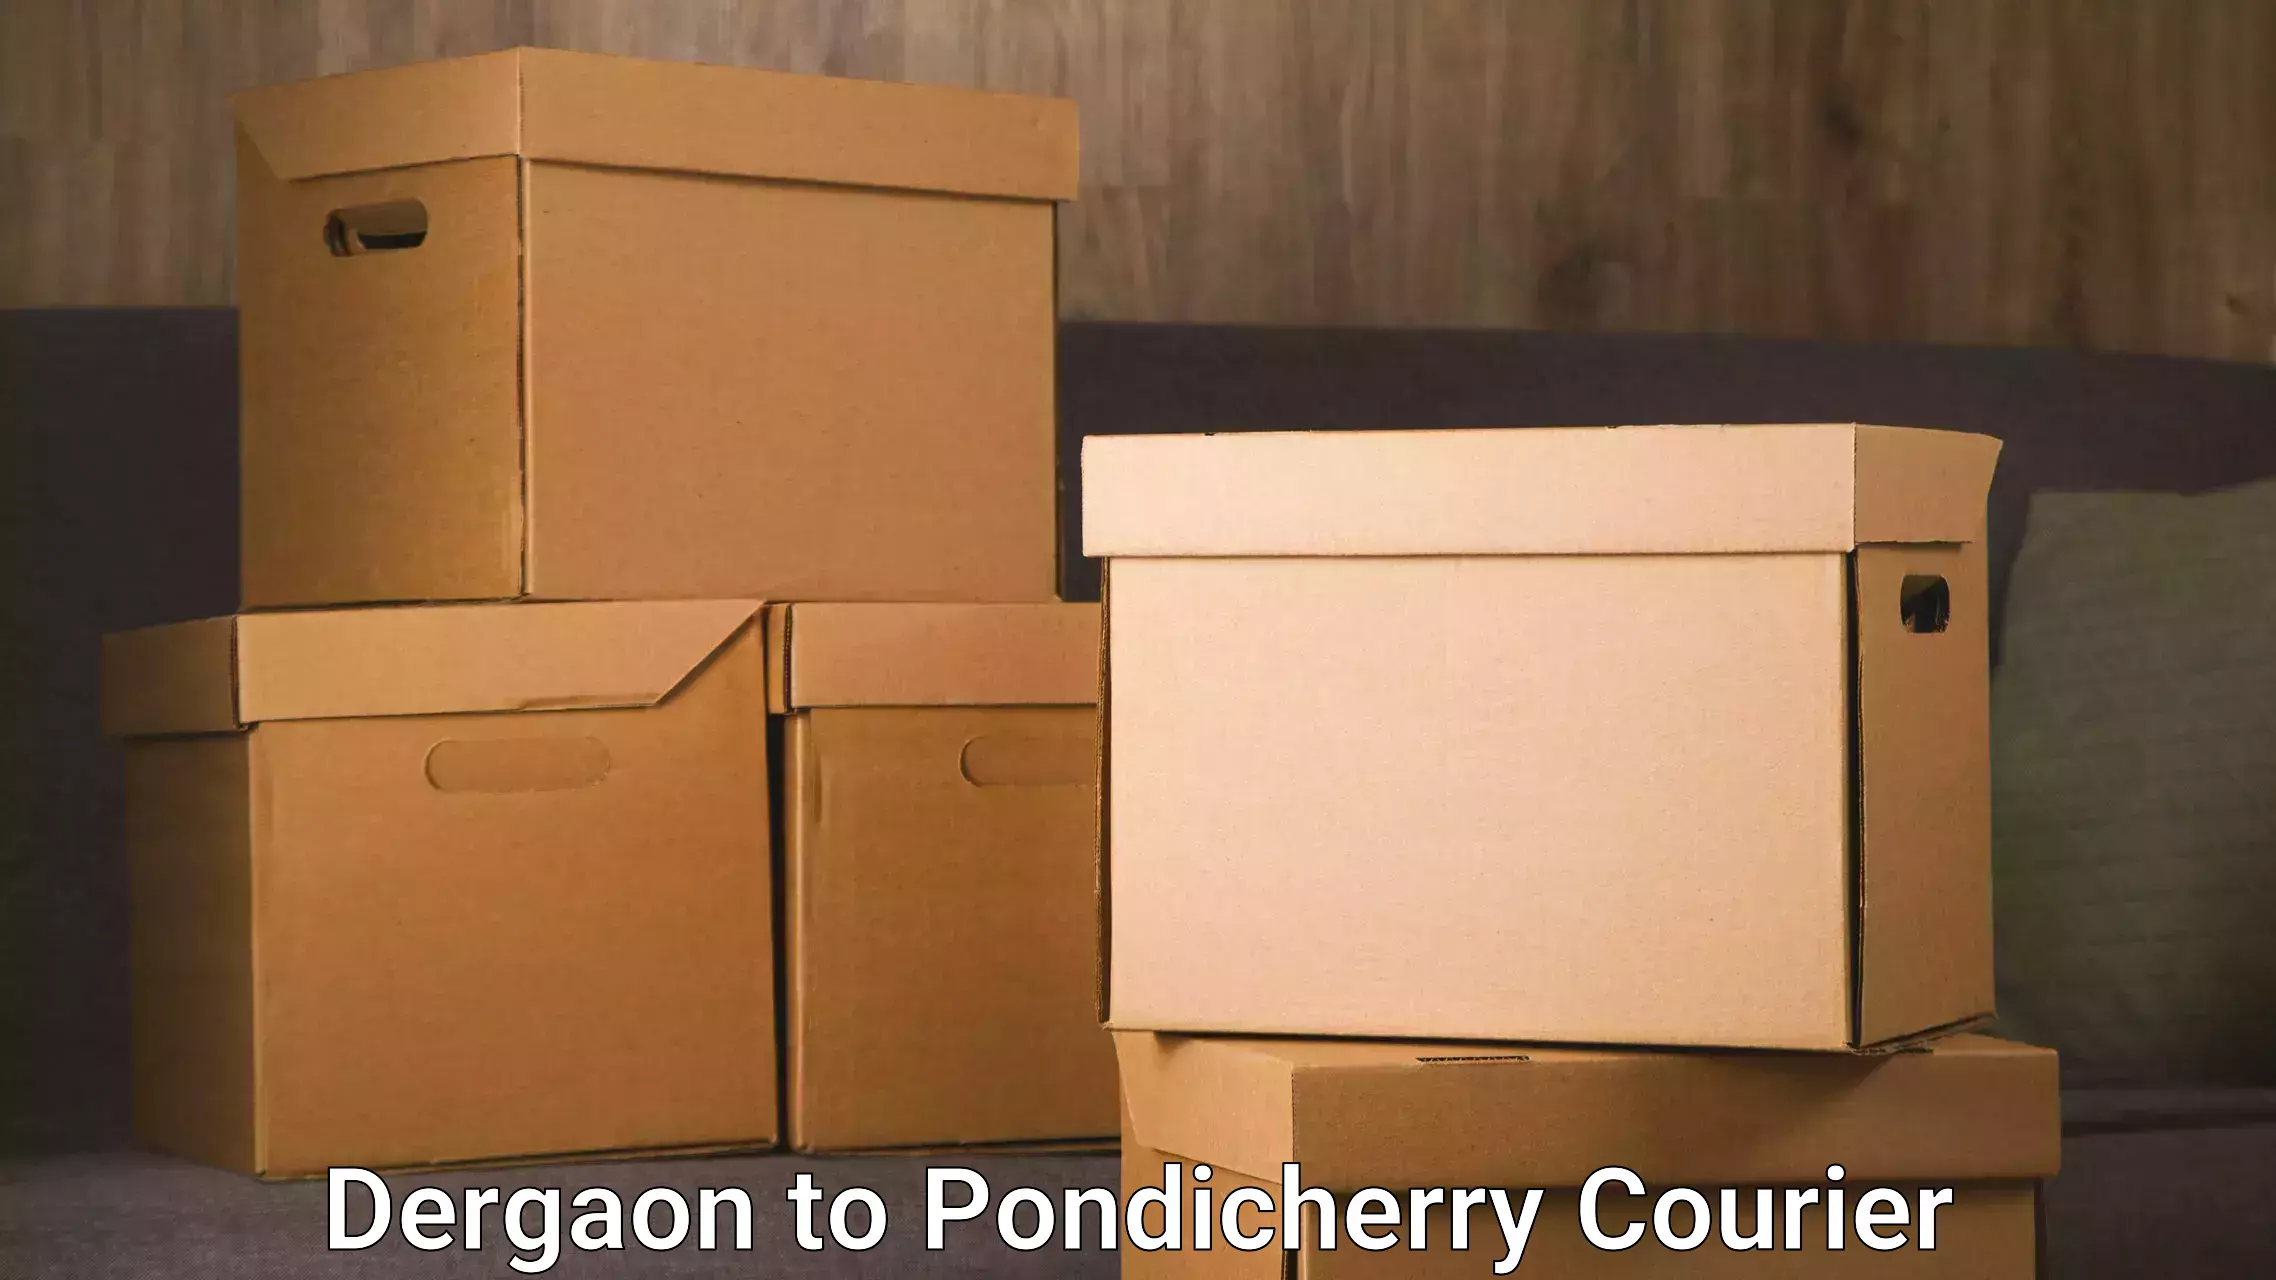 24/7 courier service Dergaon to Pondicherry University